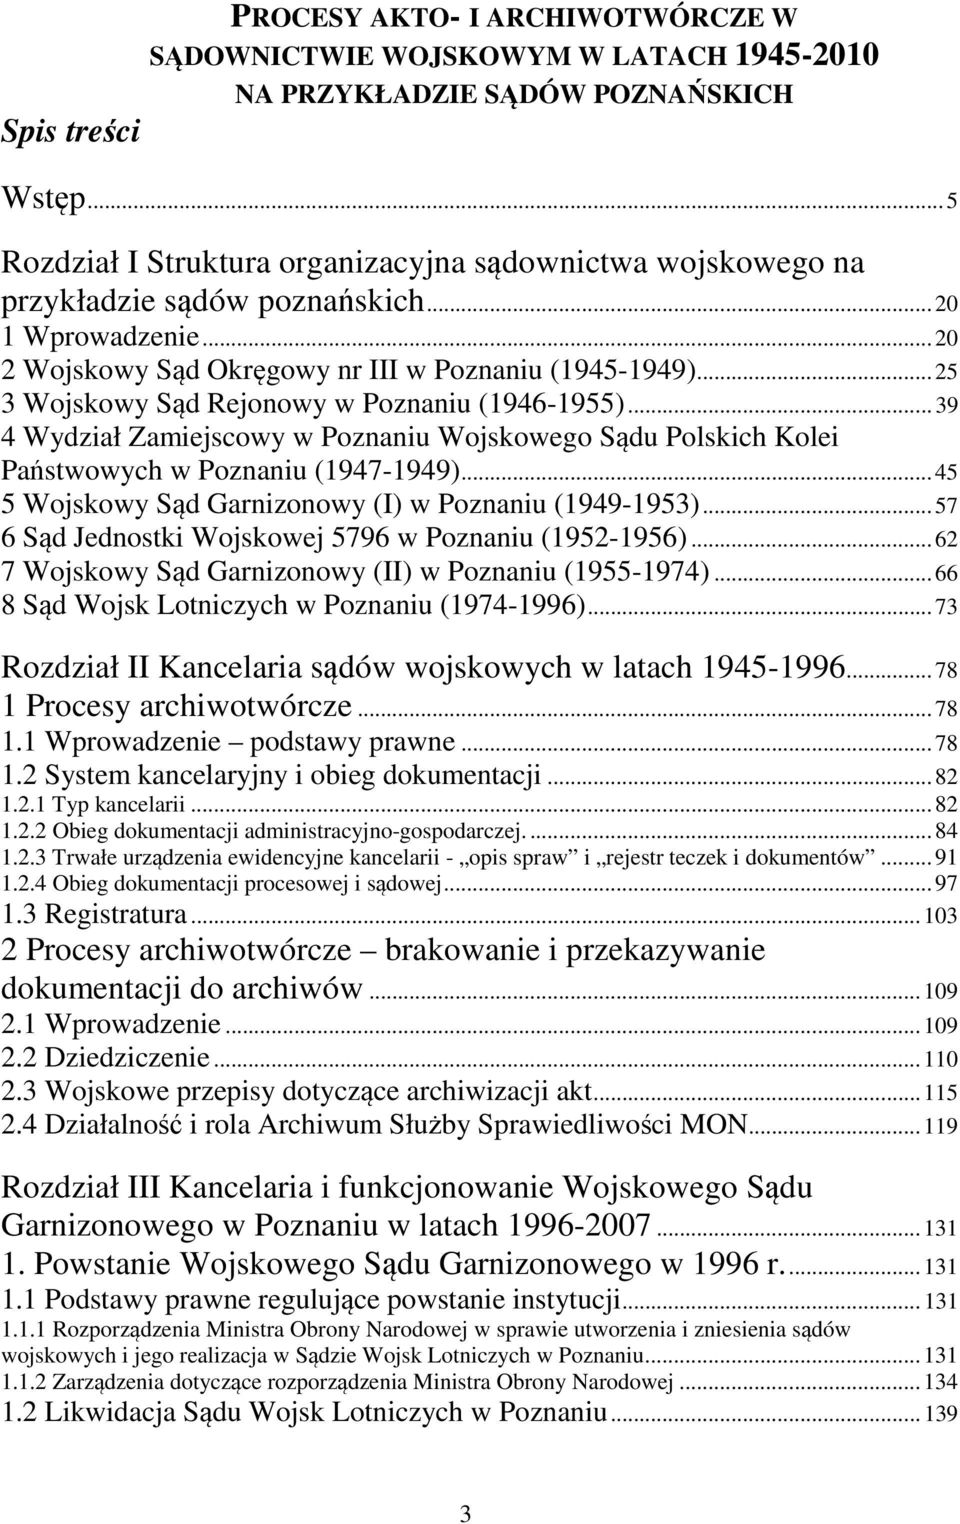 .. 25 3 Wojskowy Sąd Rejonowy w Poznaniu (1946-1955)... 39 4 Wydział Zamiejscowy w Poznaniu Wojskowego Sądu Polskich Kolei Państwowych w Poznaniu (1947-1949).